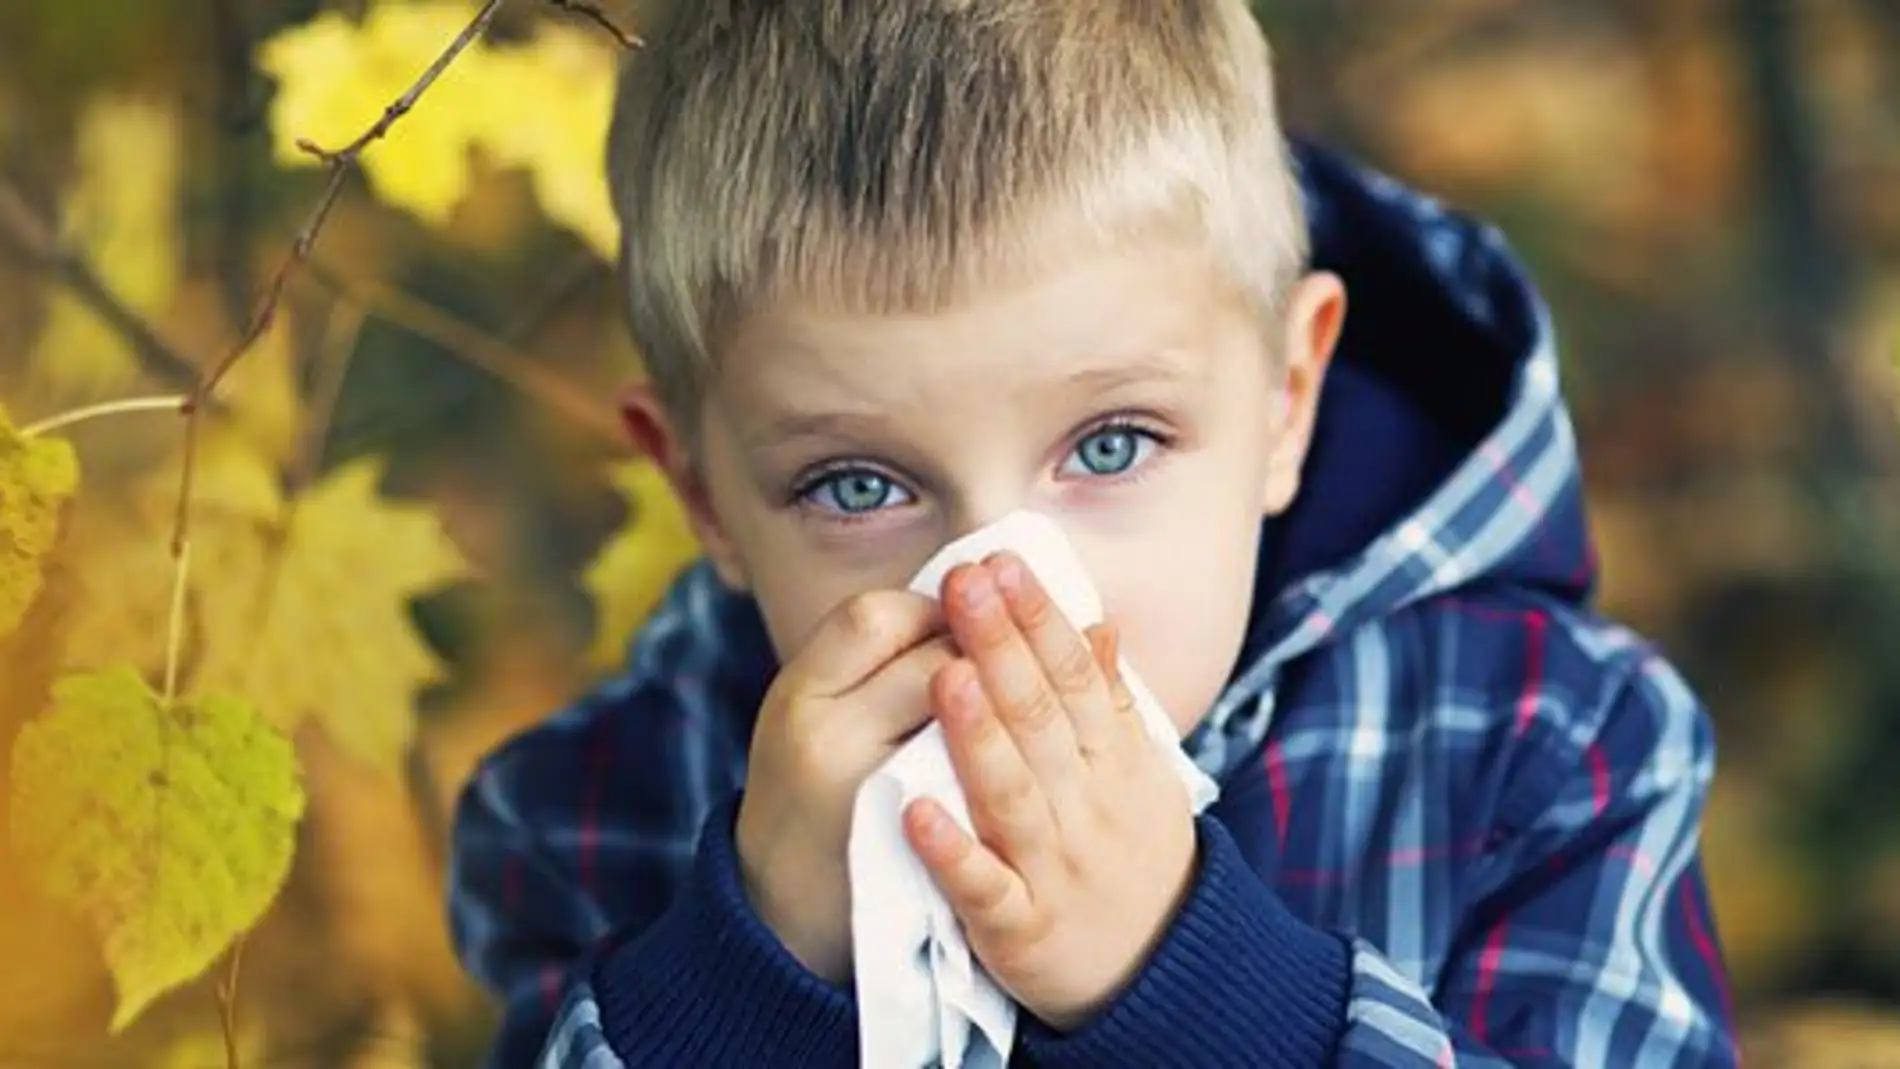 10 pistas para diferenciar un catarro de una alergia en los niños